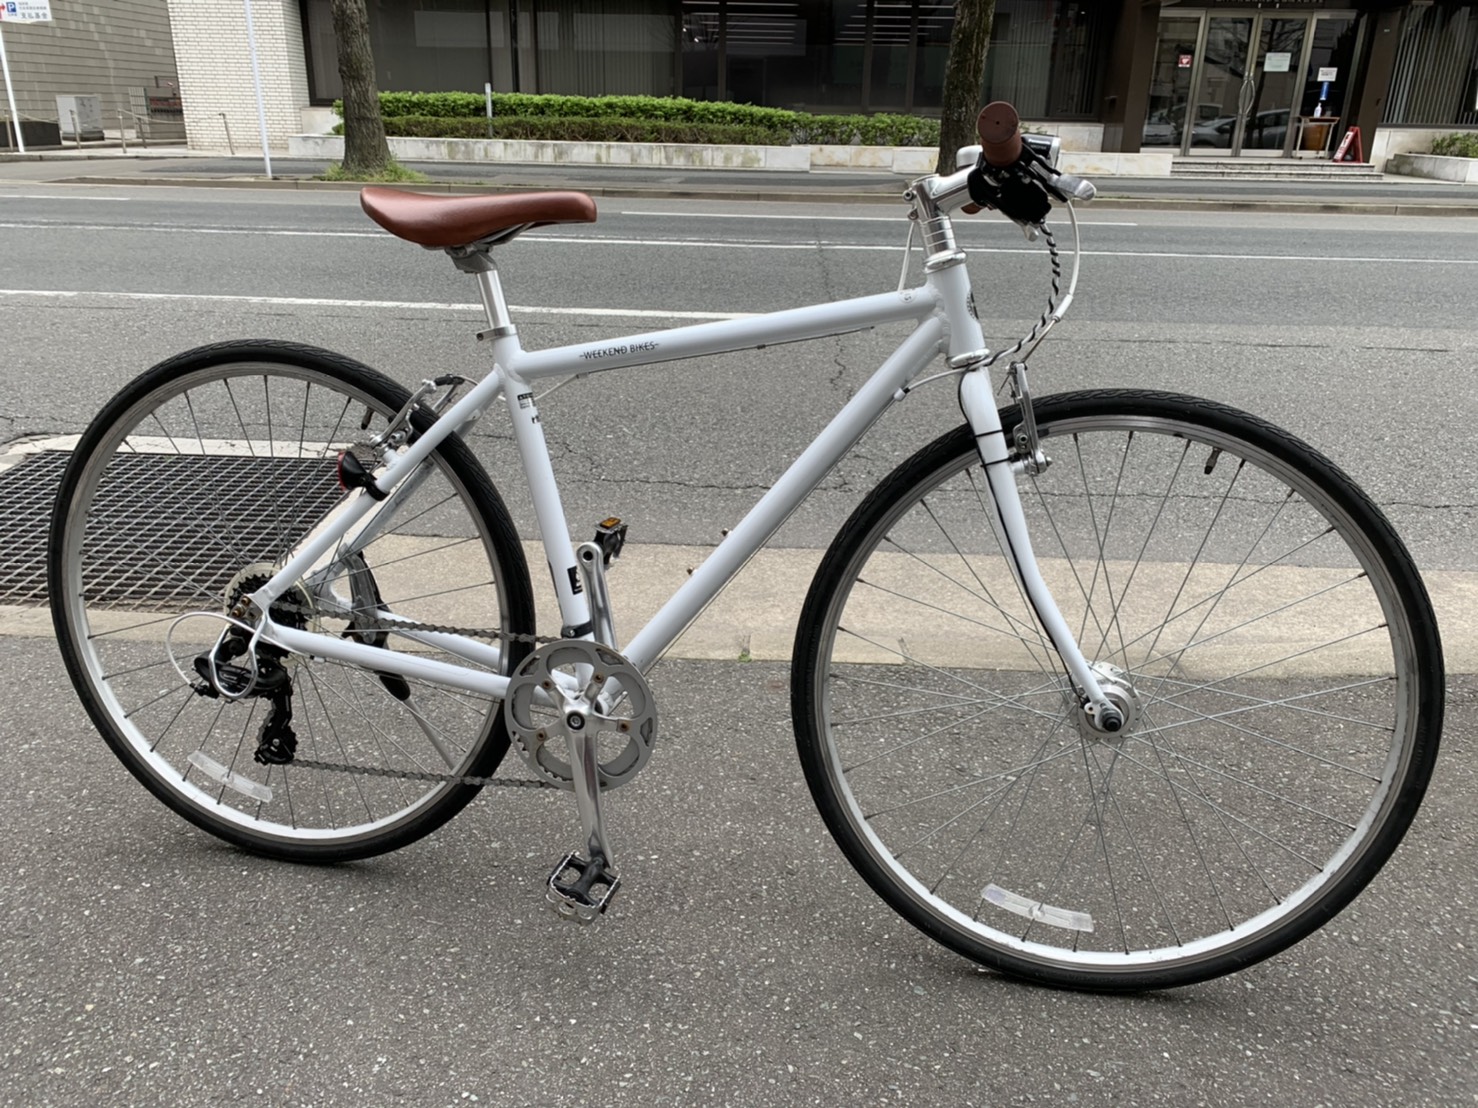 WEEKEND BIKES HD-L(中古) 700C入荷しました。【売切れ御礼】【博多駅前の自転車屋「銀の風」】 | 銀の風